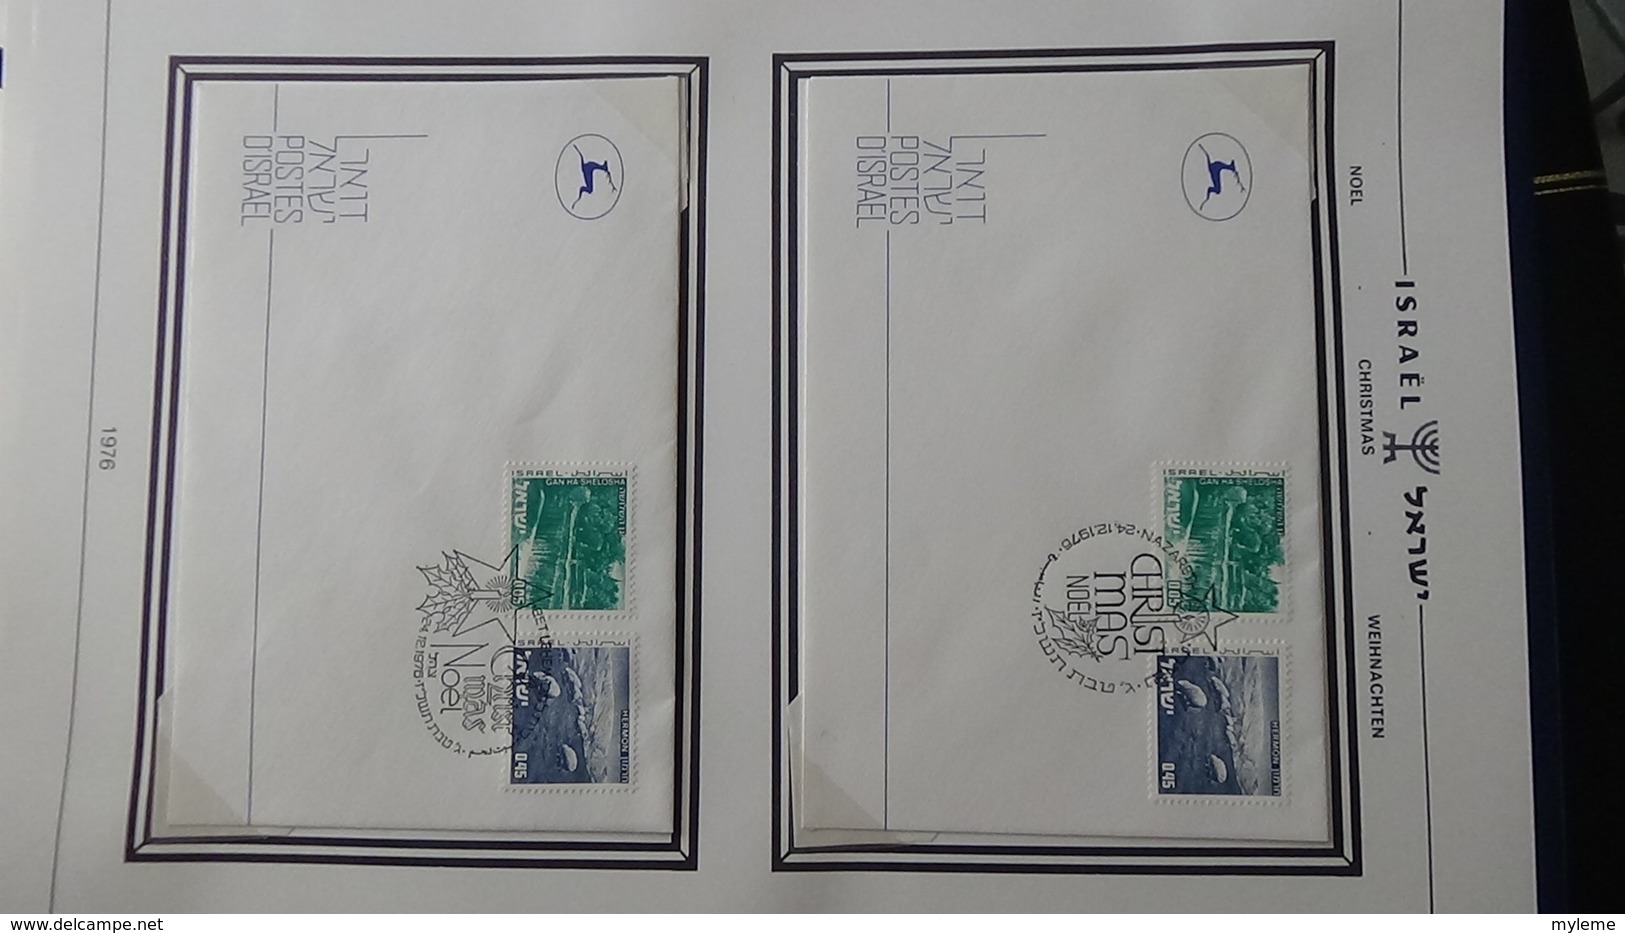 Grosse collection Israël ** + enveloppes Noël en classeur SCHEPS vol 3 de 1993 à 1997. Belle qualité !!!